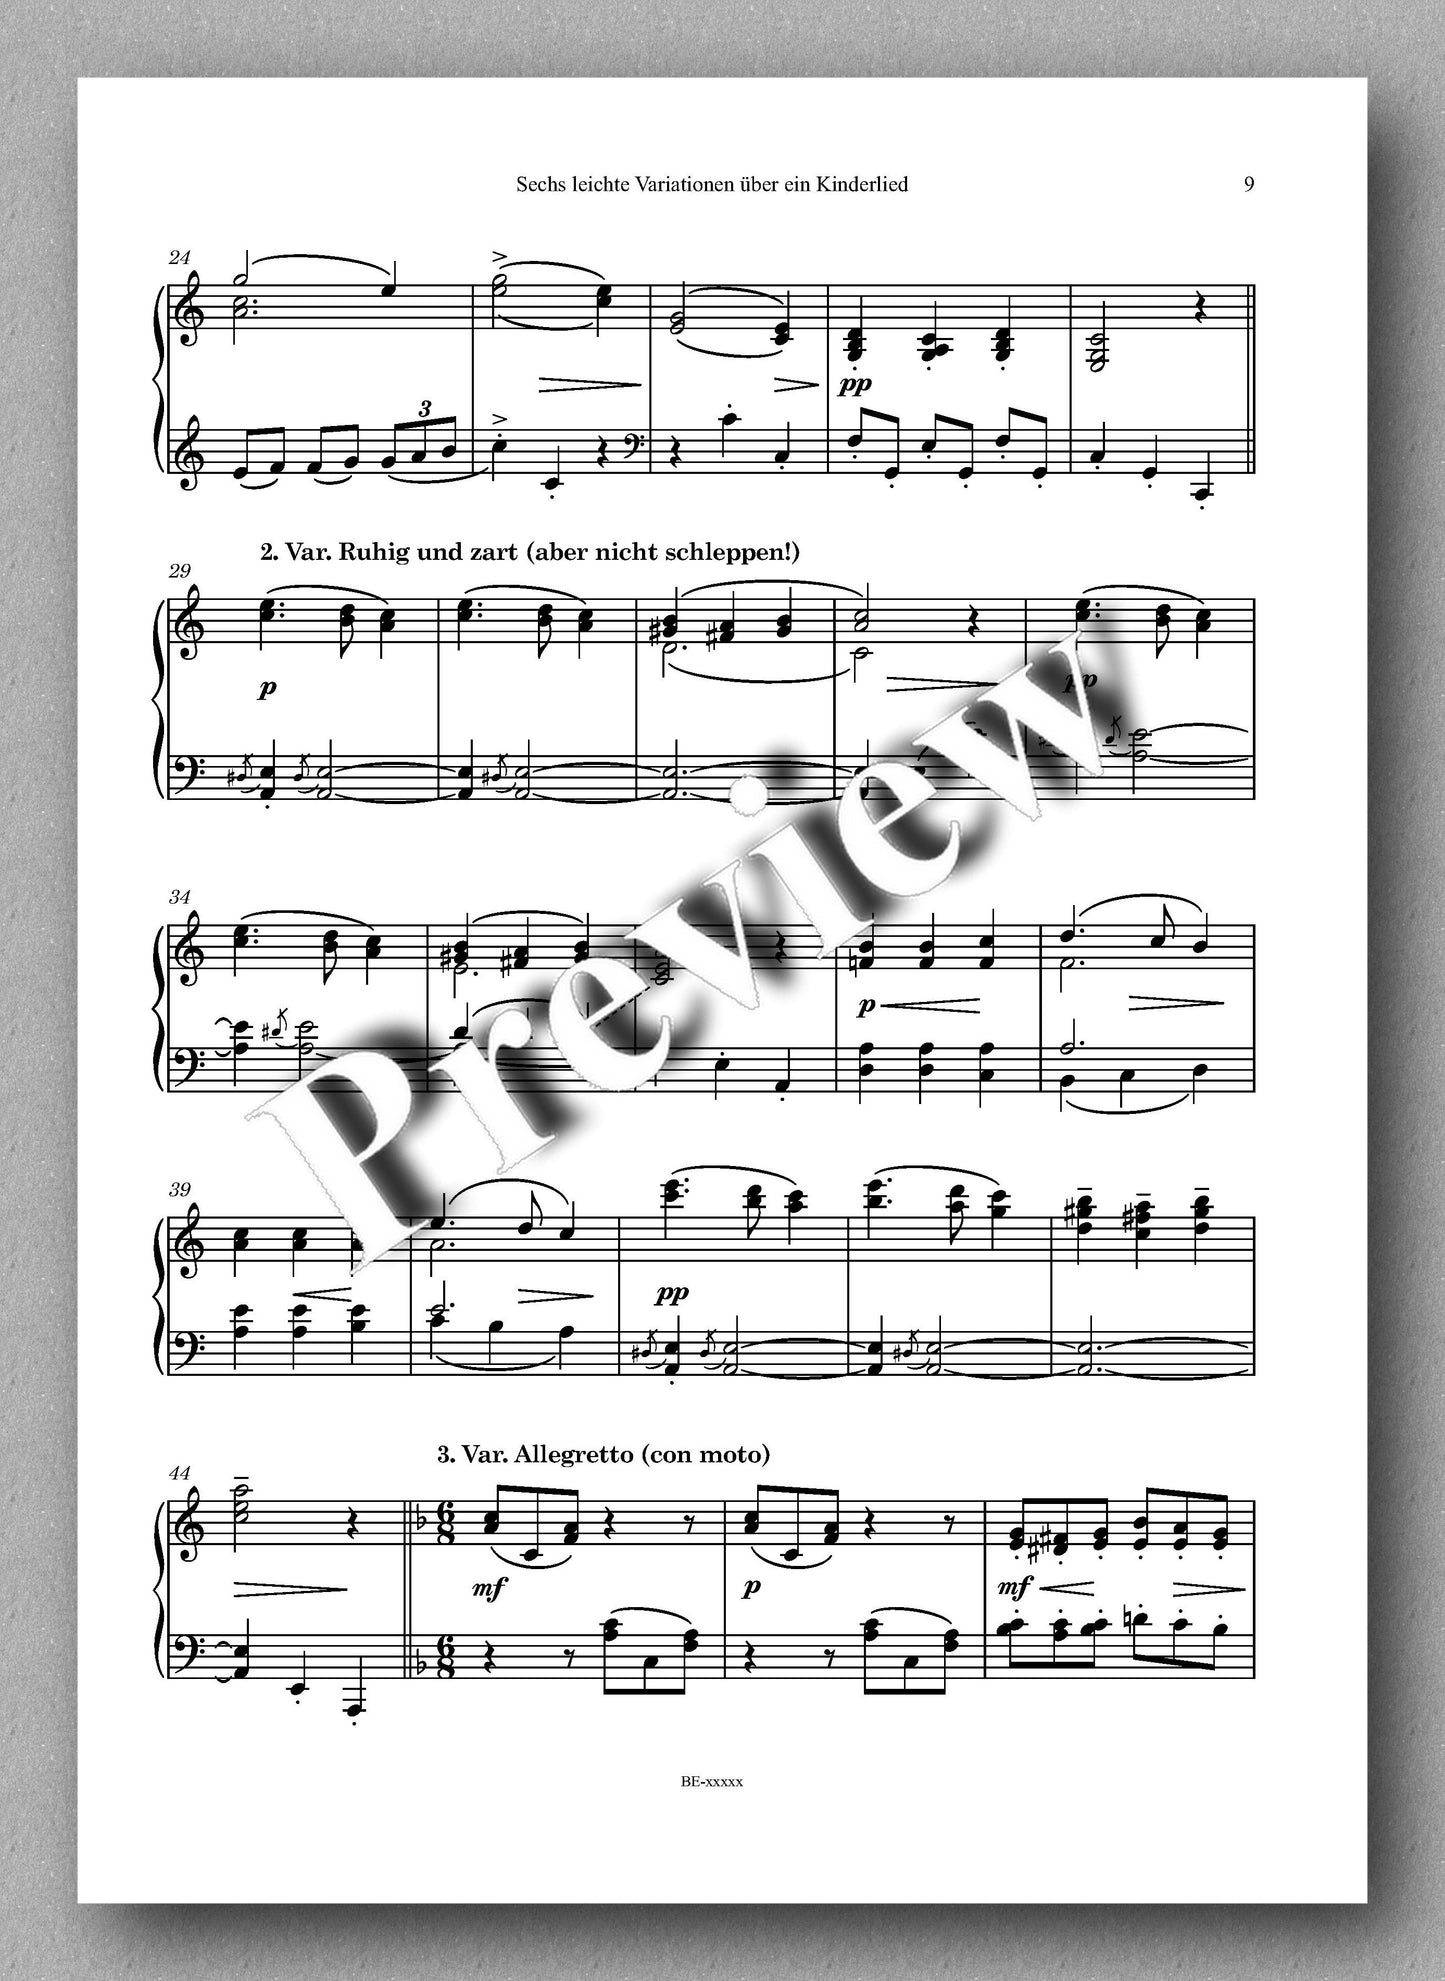 Ferdinand Rebay, Ganz kleine Variationen über “Schlaf, Kindlein, schlaf” & Sechs leichte Variationen über ein Kinderlied - music score 4